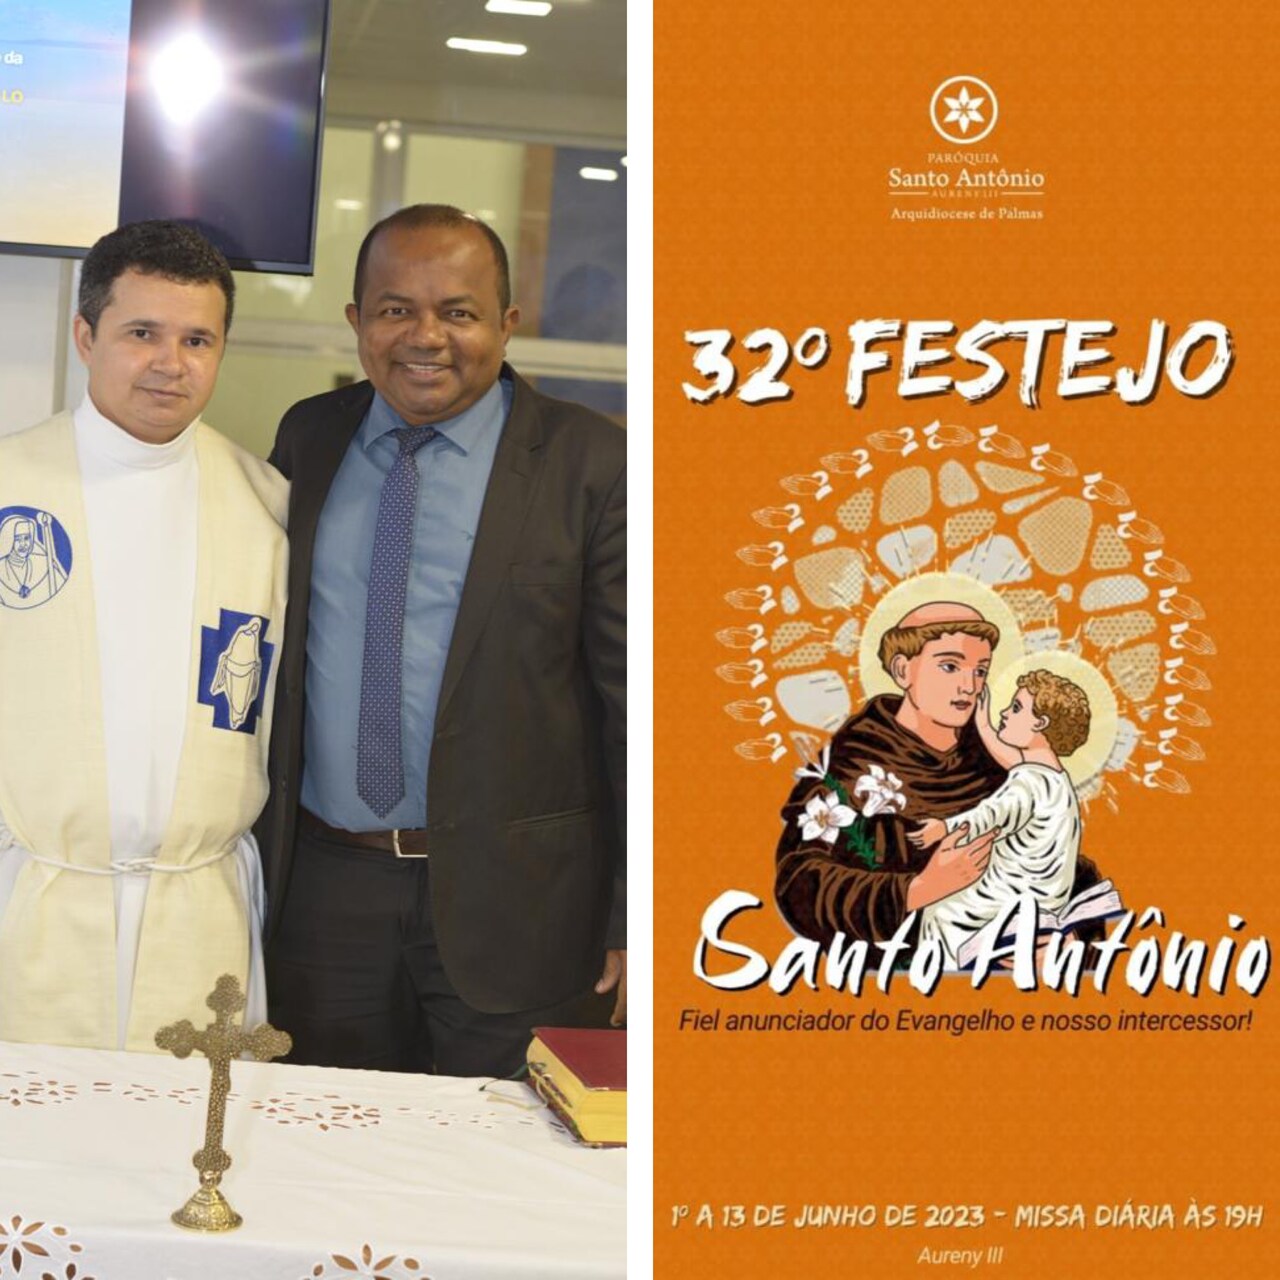 Vereador Joatan de Jesus convida população palmense para participar do Festejo da Paróquia Santo Antônio do Aureny III